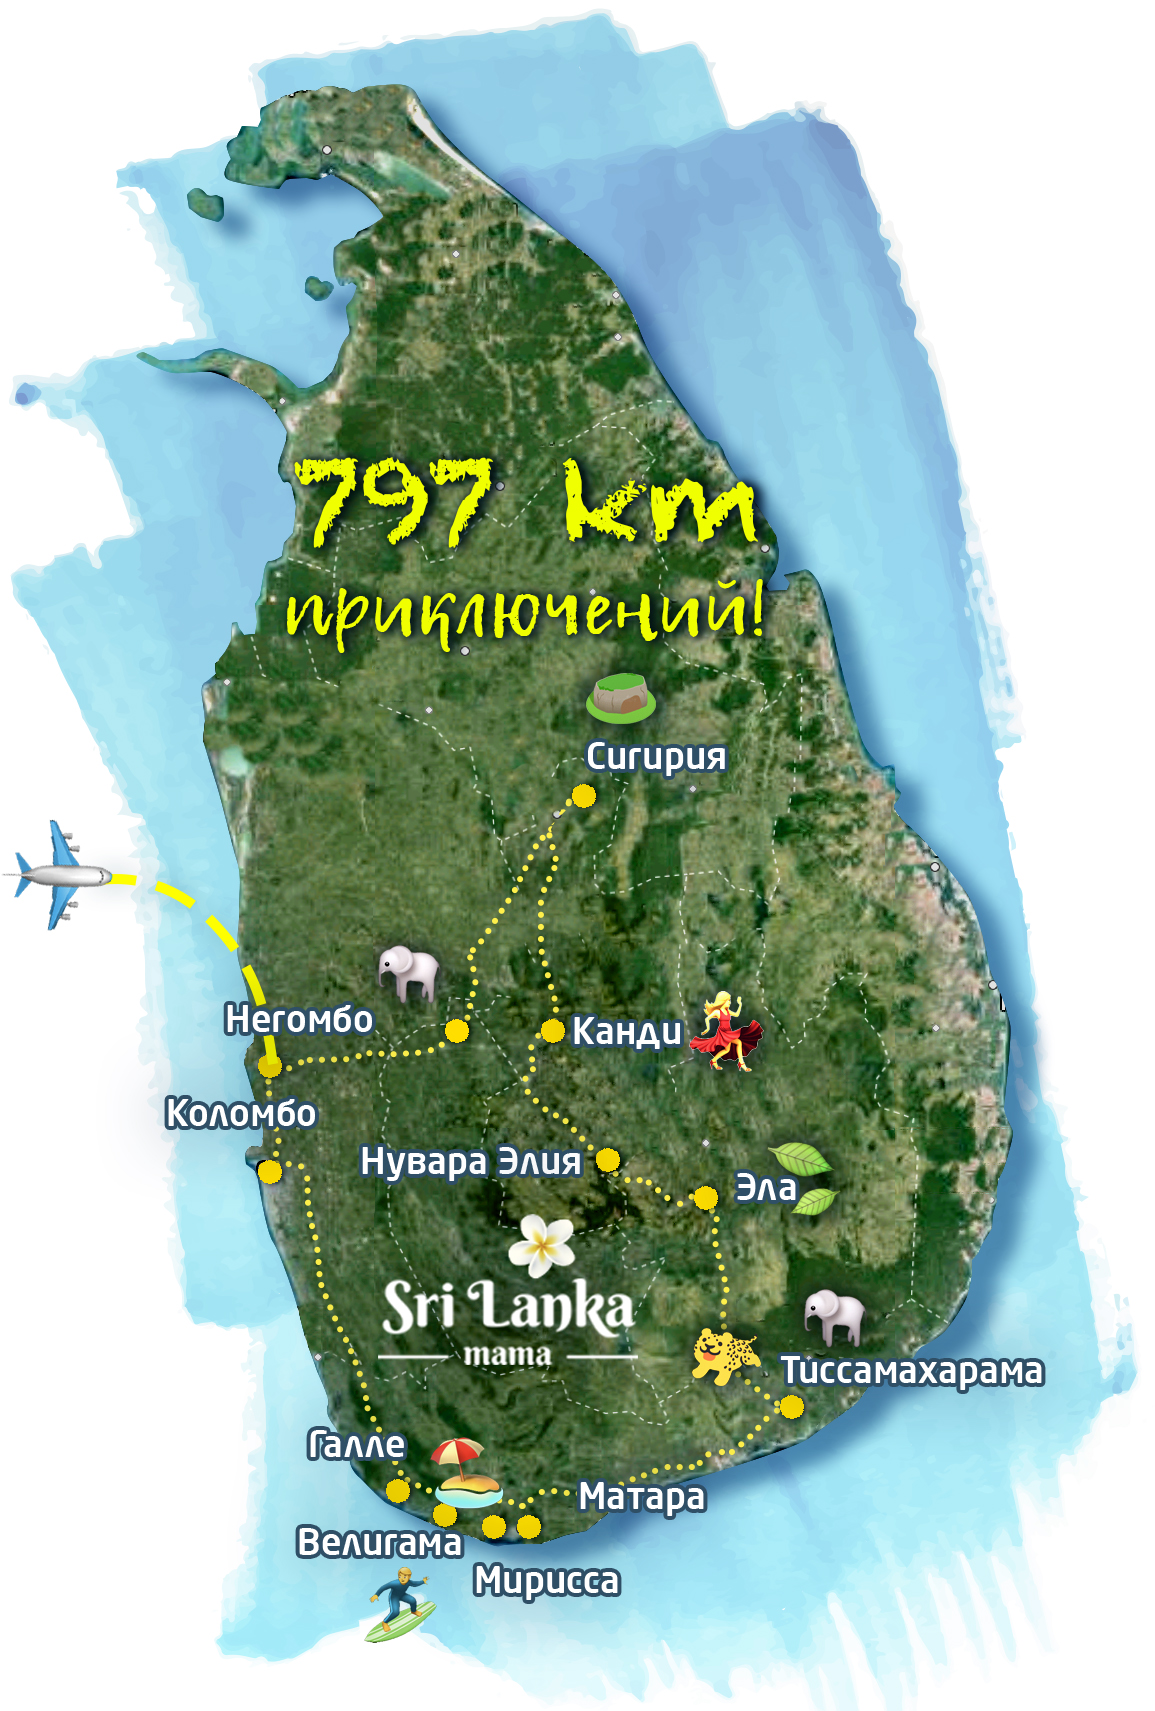 Достопримечательности шри ланки на карте. Шри-Ланка достопримечательности на карте. Шри Ланка карта туриста. Шри Ланка достопримечательности на карте острова. Туристическая карта Шри Ланки.